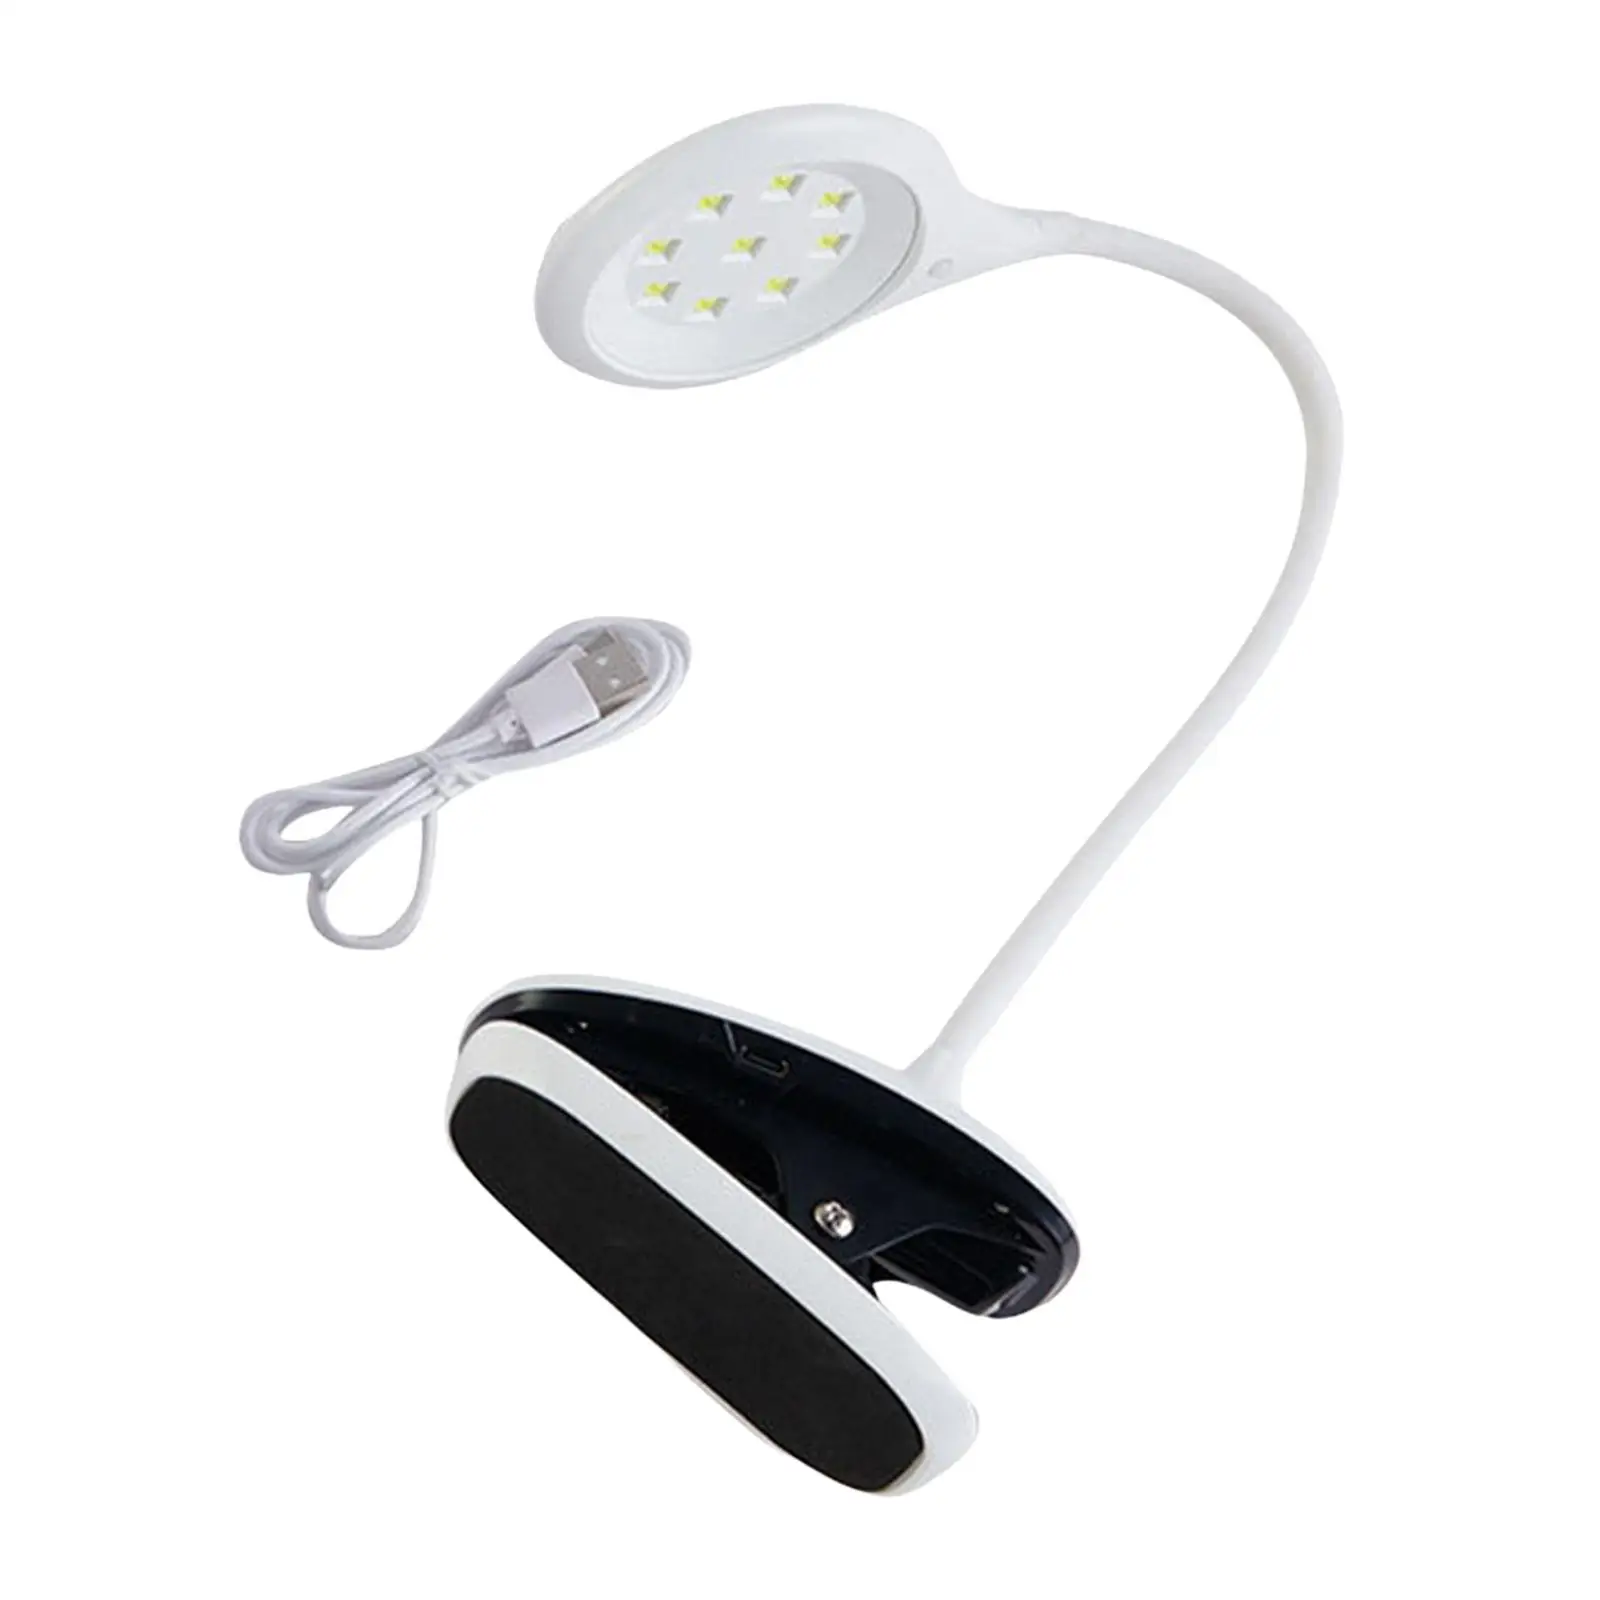 UV LED Nail Lamp Small Nail Polish Curing Lamp for Nail Salon Manicure Tool